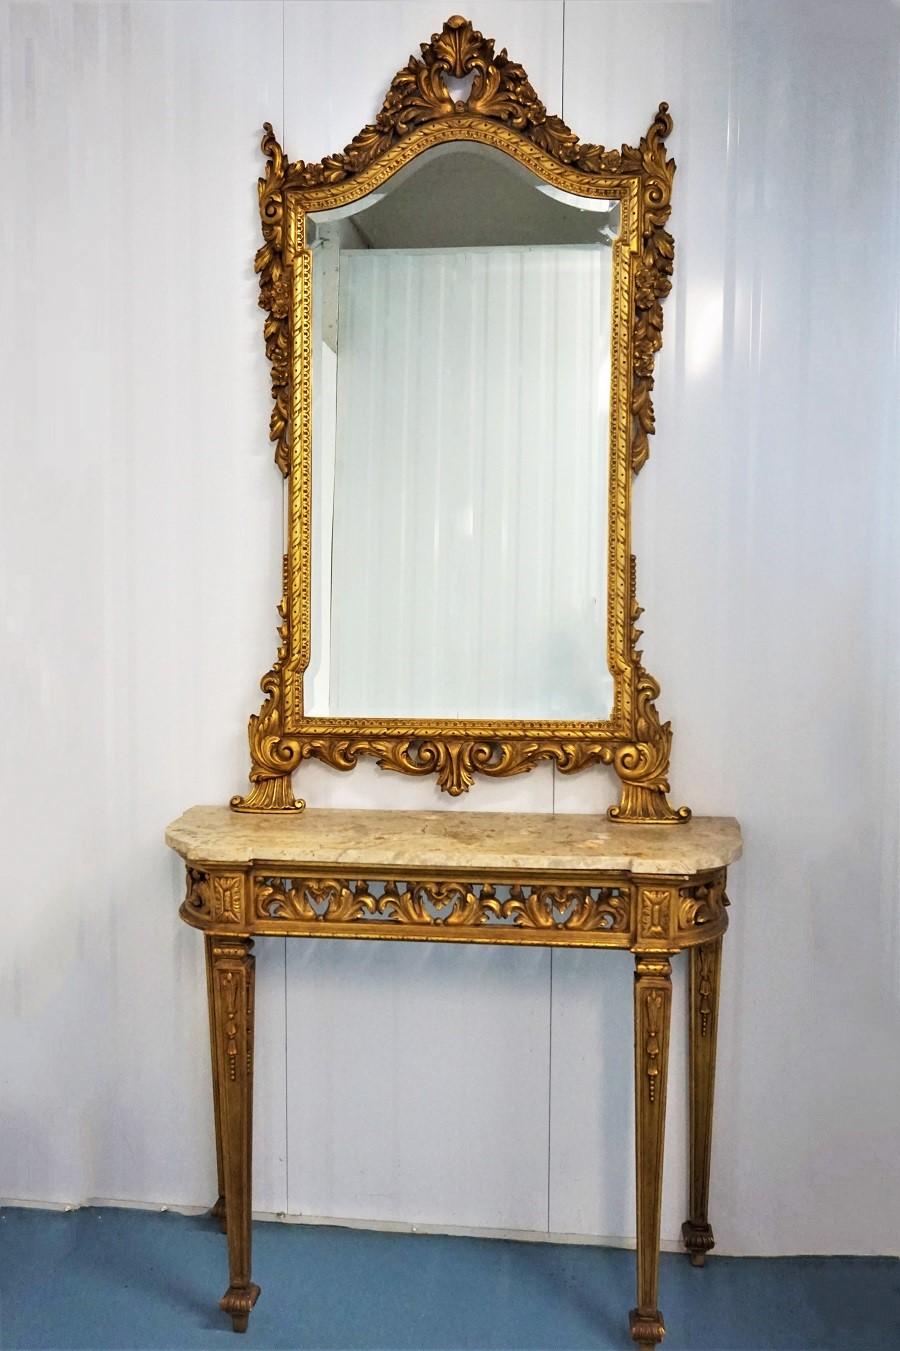 Console et miroir en bois doré de style Louis XVI de la fin du XIXe siècle. La table est finement sculptée à la main dans des détails précis sur quatre pieds fuselés et cannelés avec d'élégantes sculptures feuillagées. Au-dessus de chaque pied, des